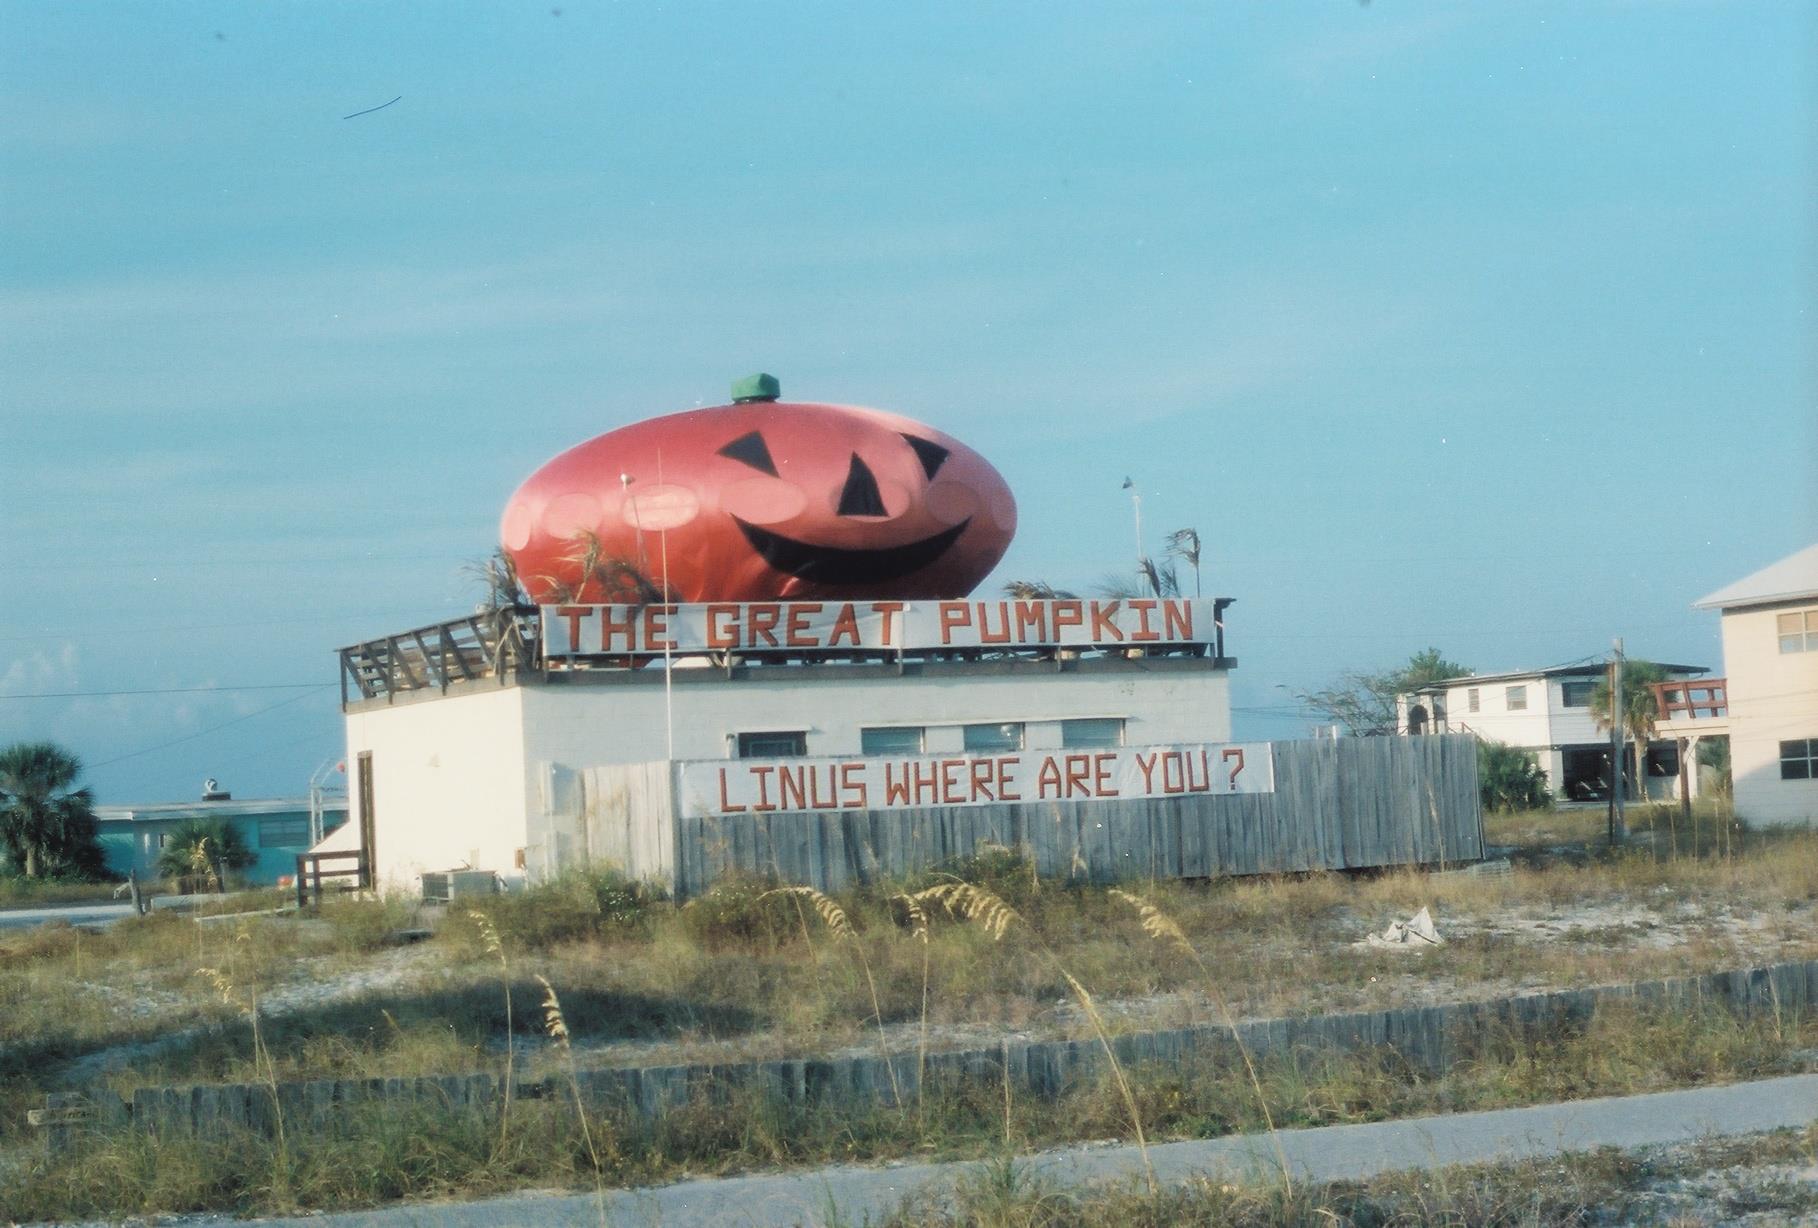 Futuro, Pensacola Beach, Florida, USA - Pumpkin